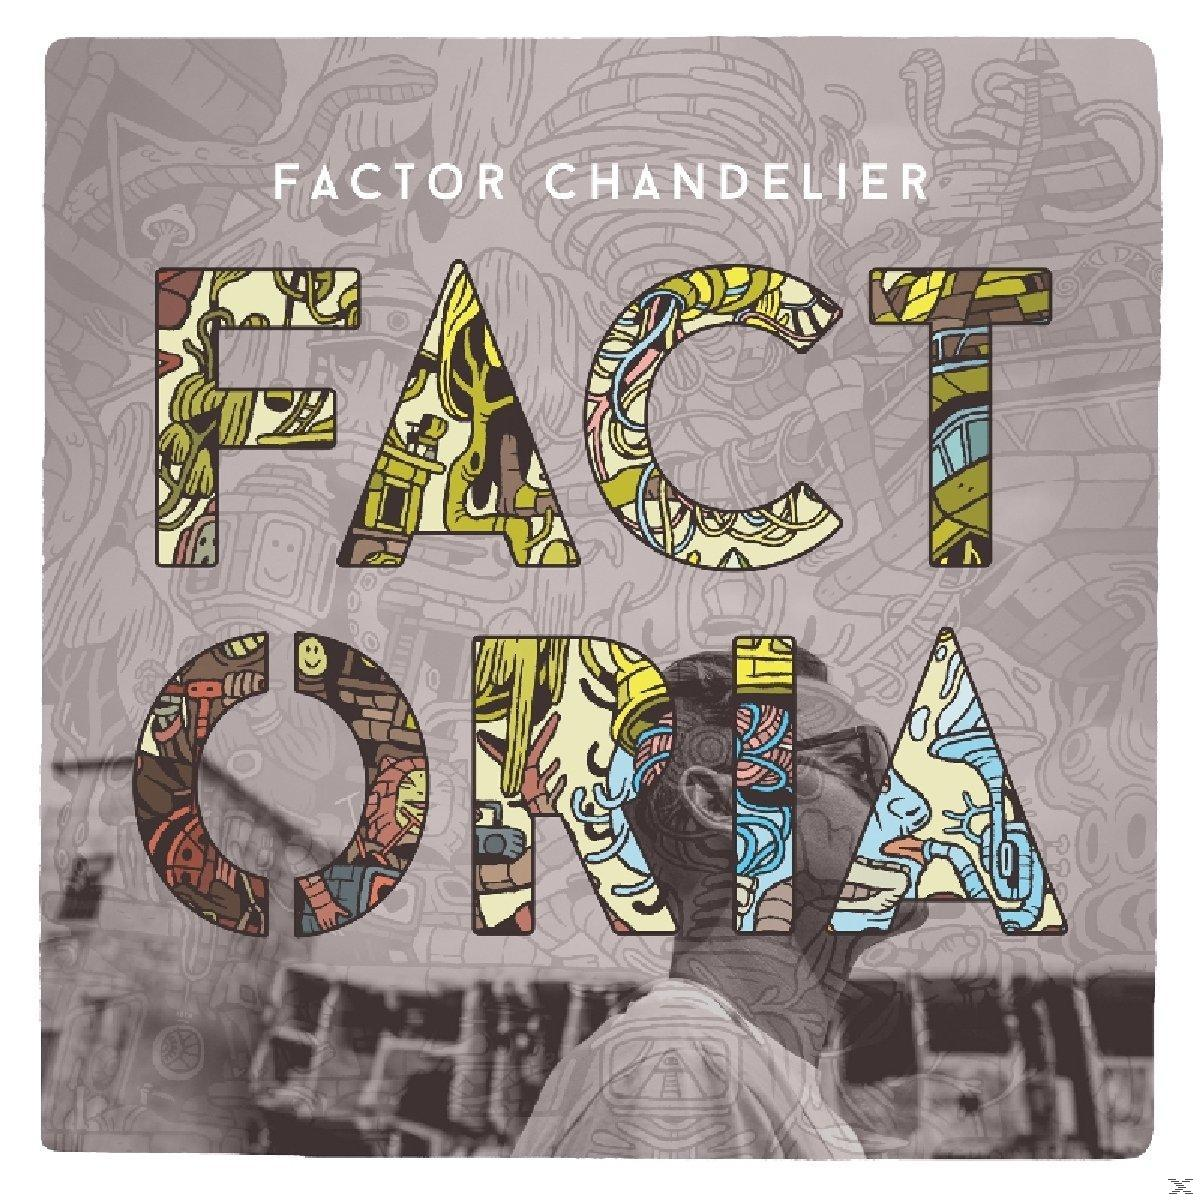 Factor Chandelier - Factoria - (Vinyl)